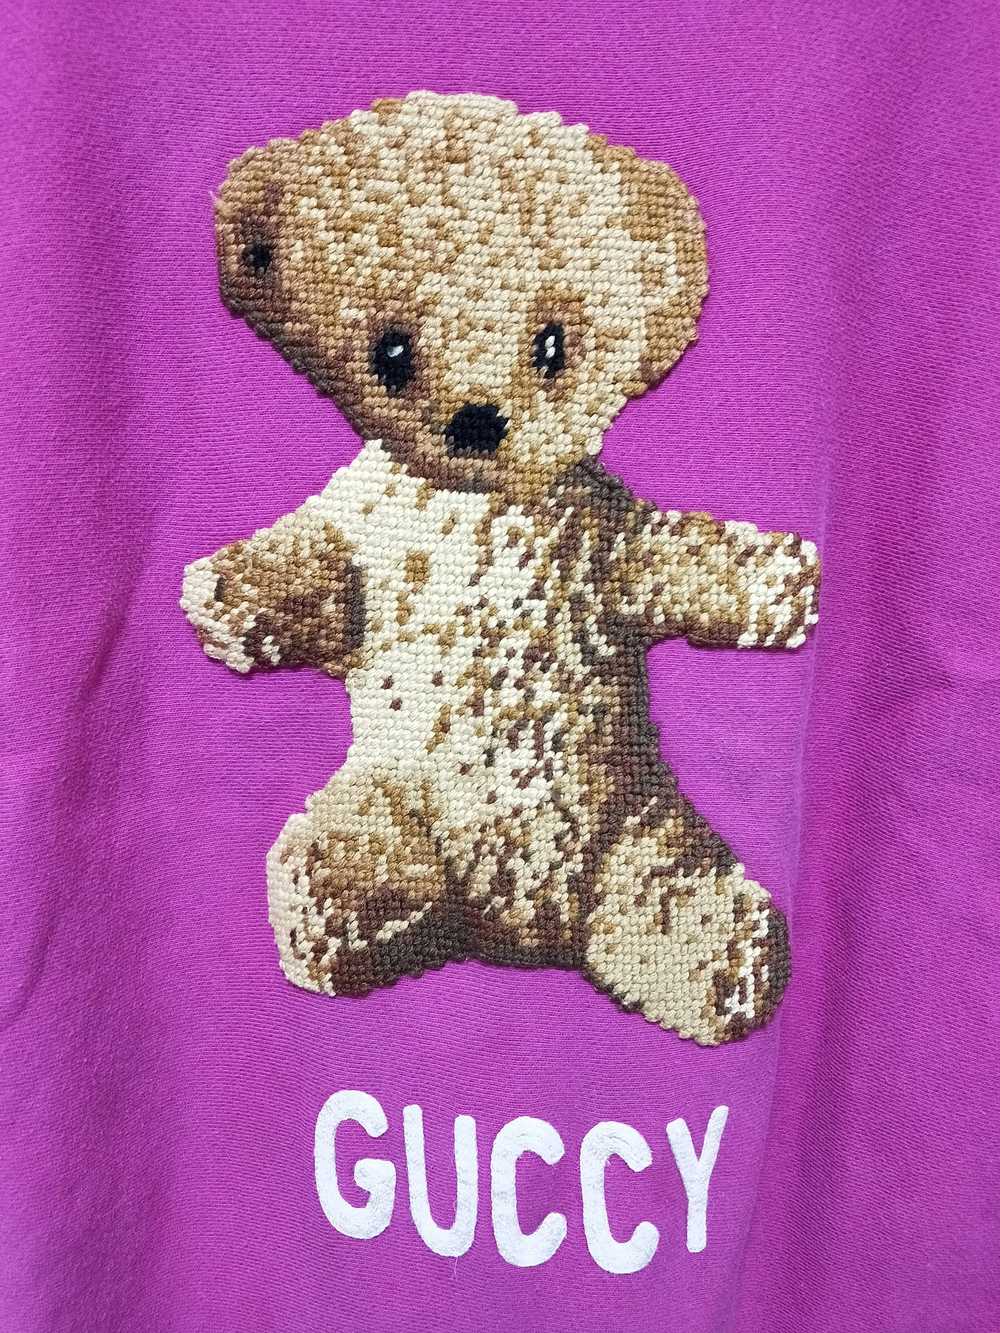 Gucci 'Guccy' Teddy Bear Sweatshirt - image 2